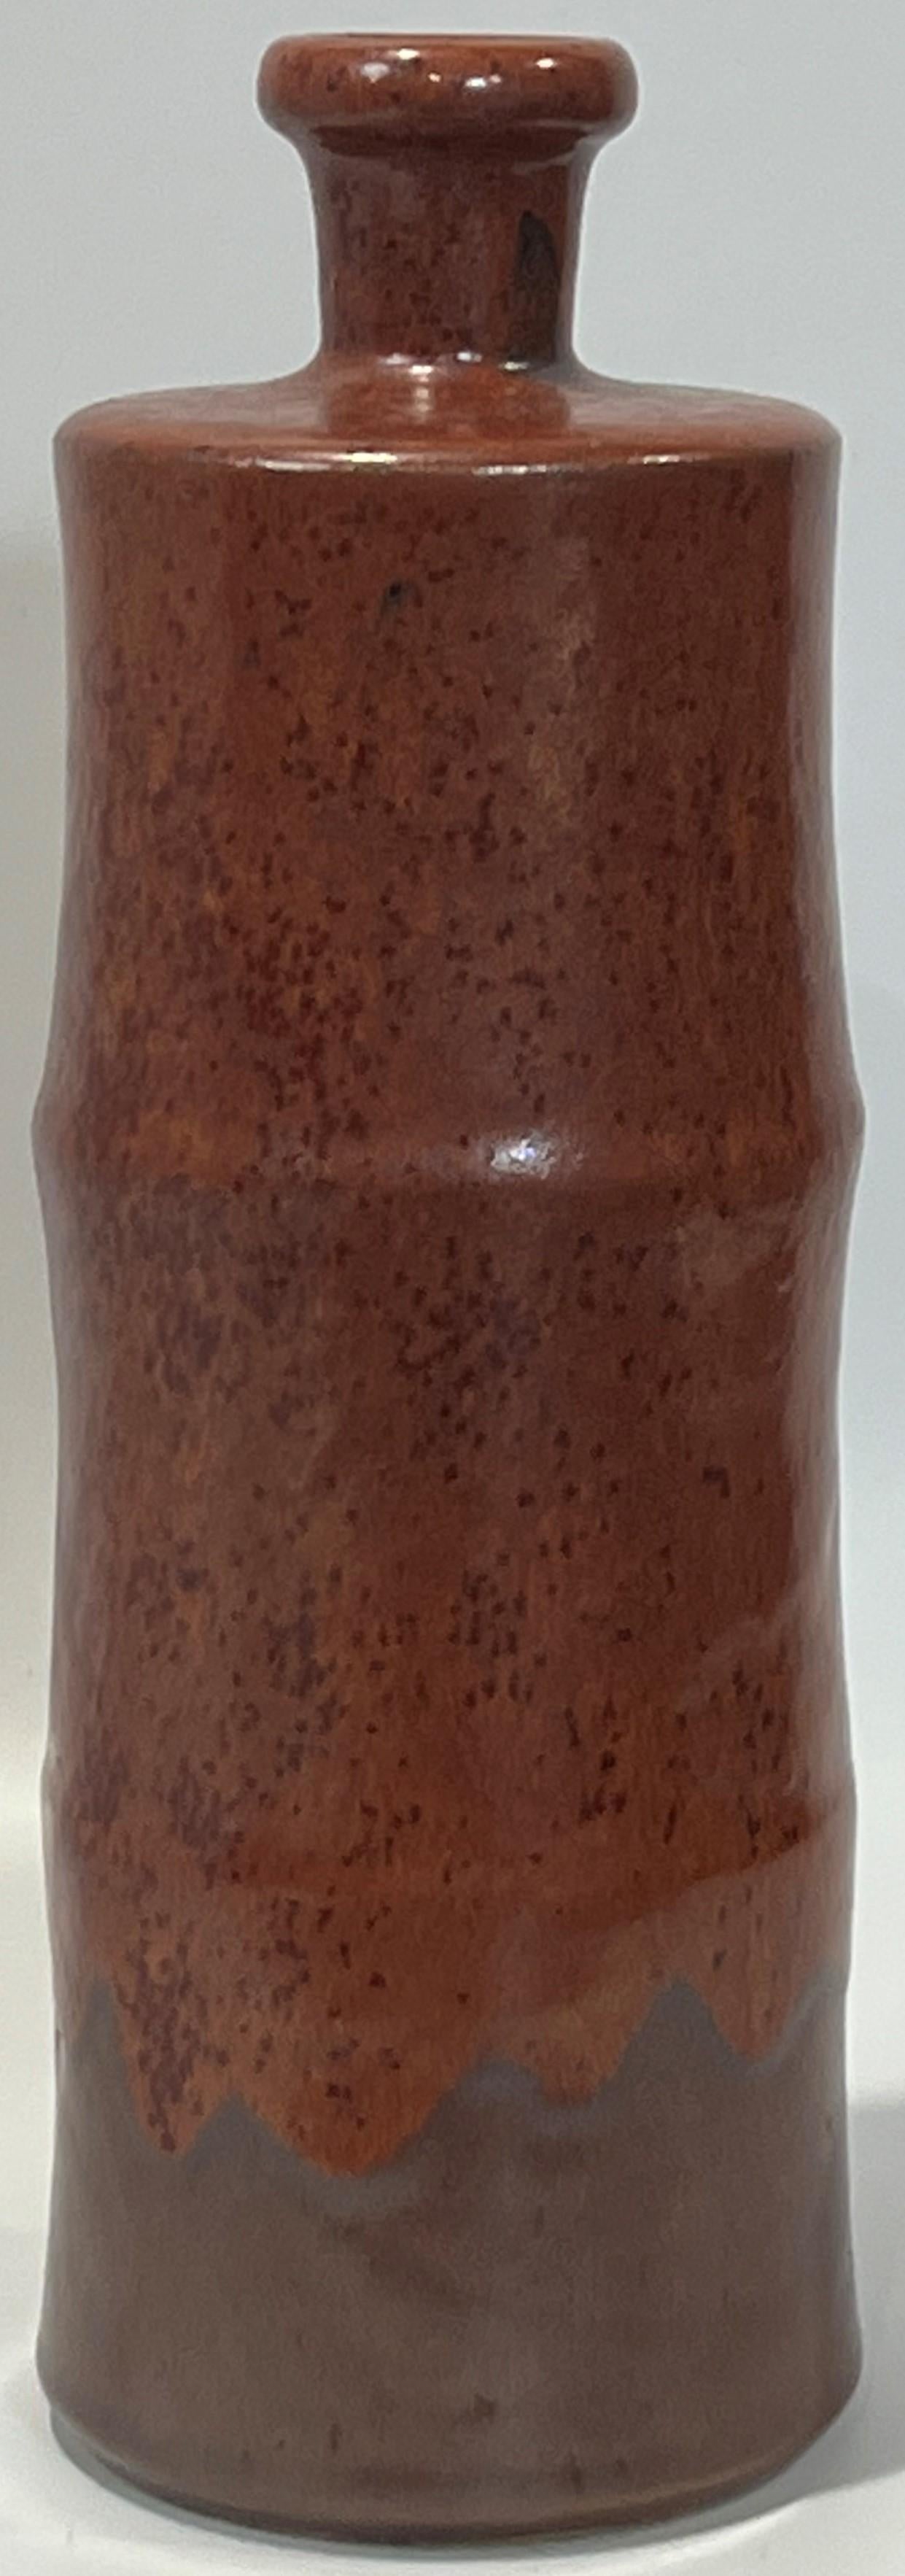 Hand-Crafted Horst Kerstan Bottle Vase Large Fantastic Brown Micro-Crystalline over Brown